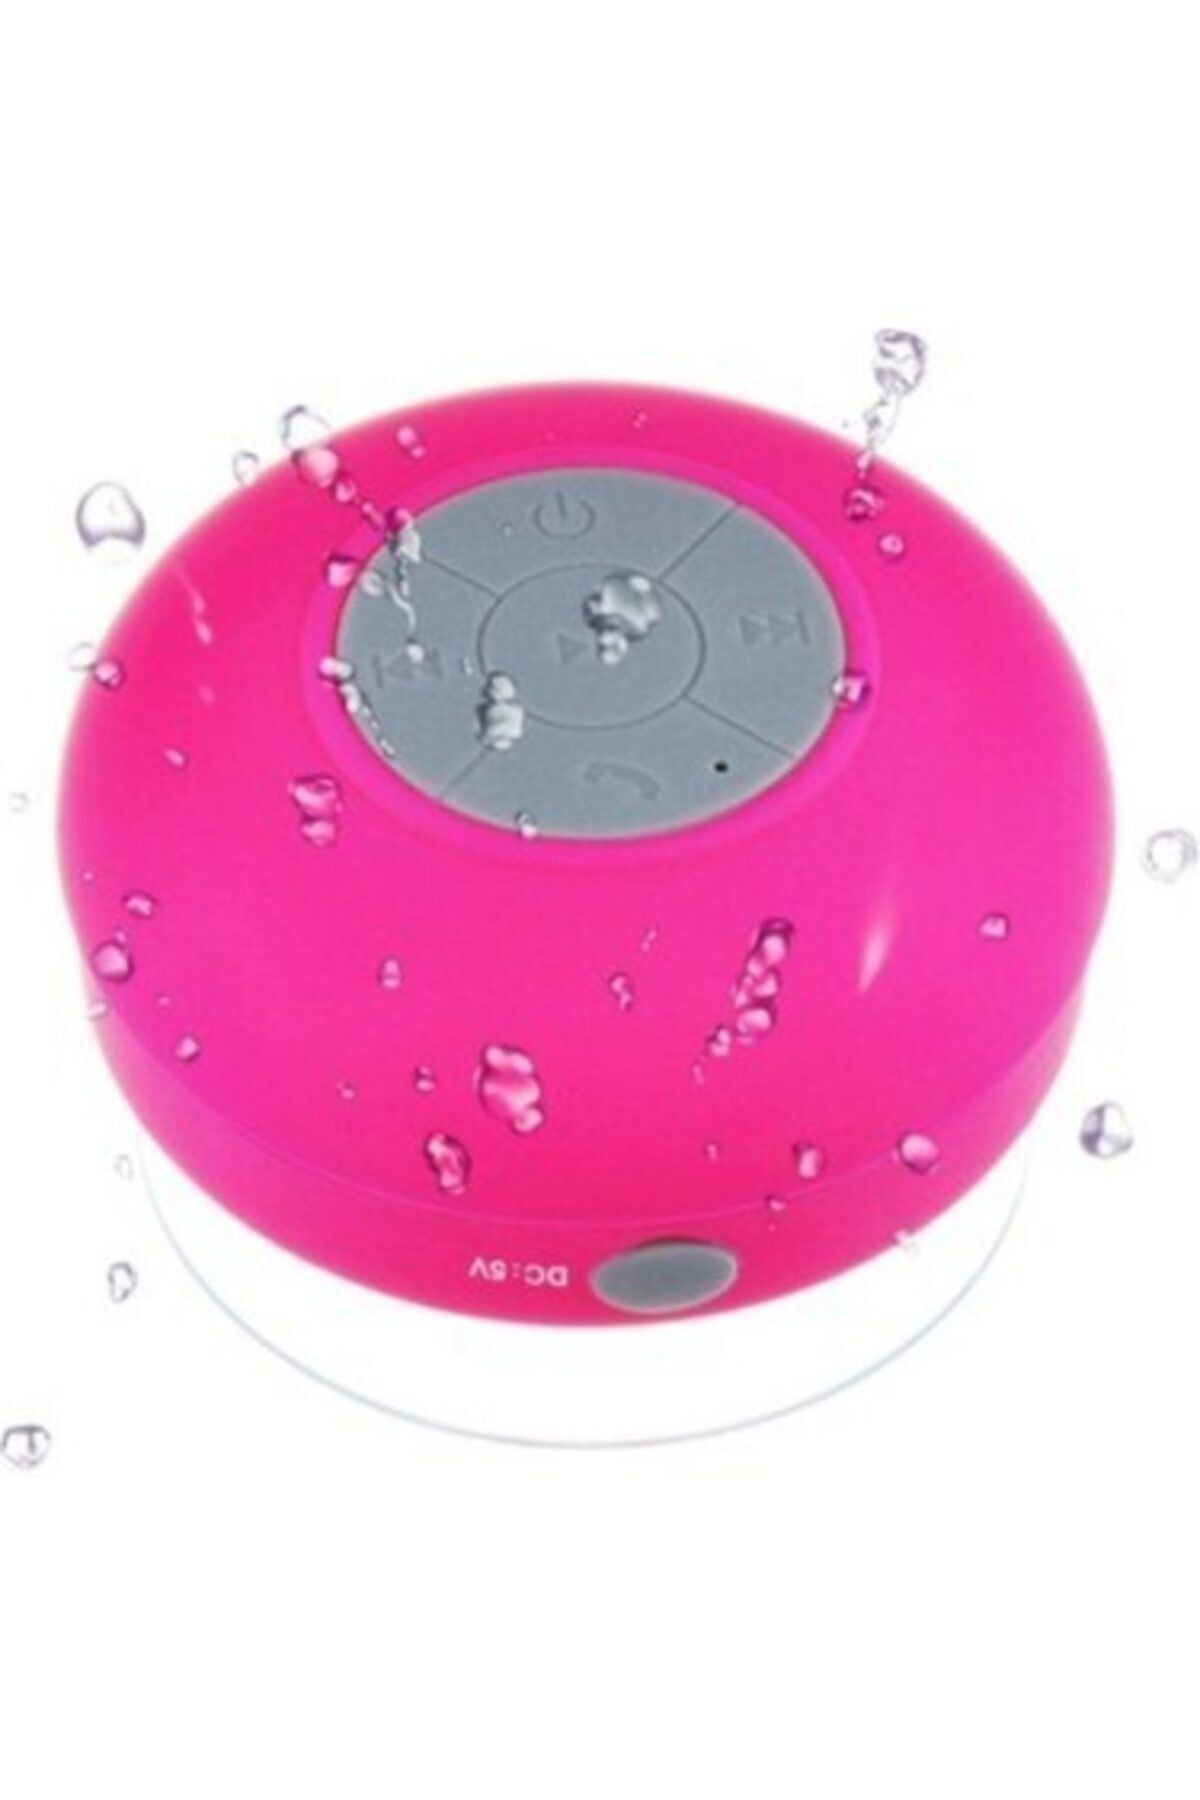 baddin aksesuar Bluetoothlu Duş Hoparlörü Su Geçirmez Hoparlör Tf Kart Girişli Ses Bombası